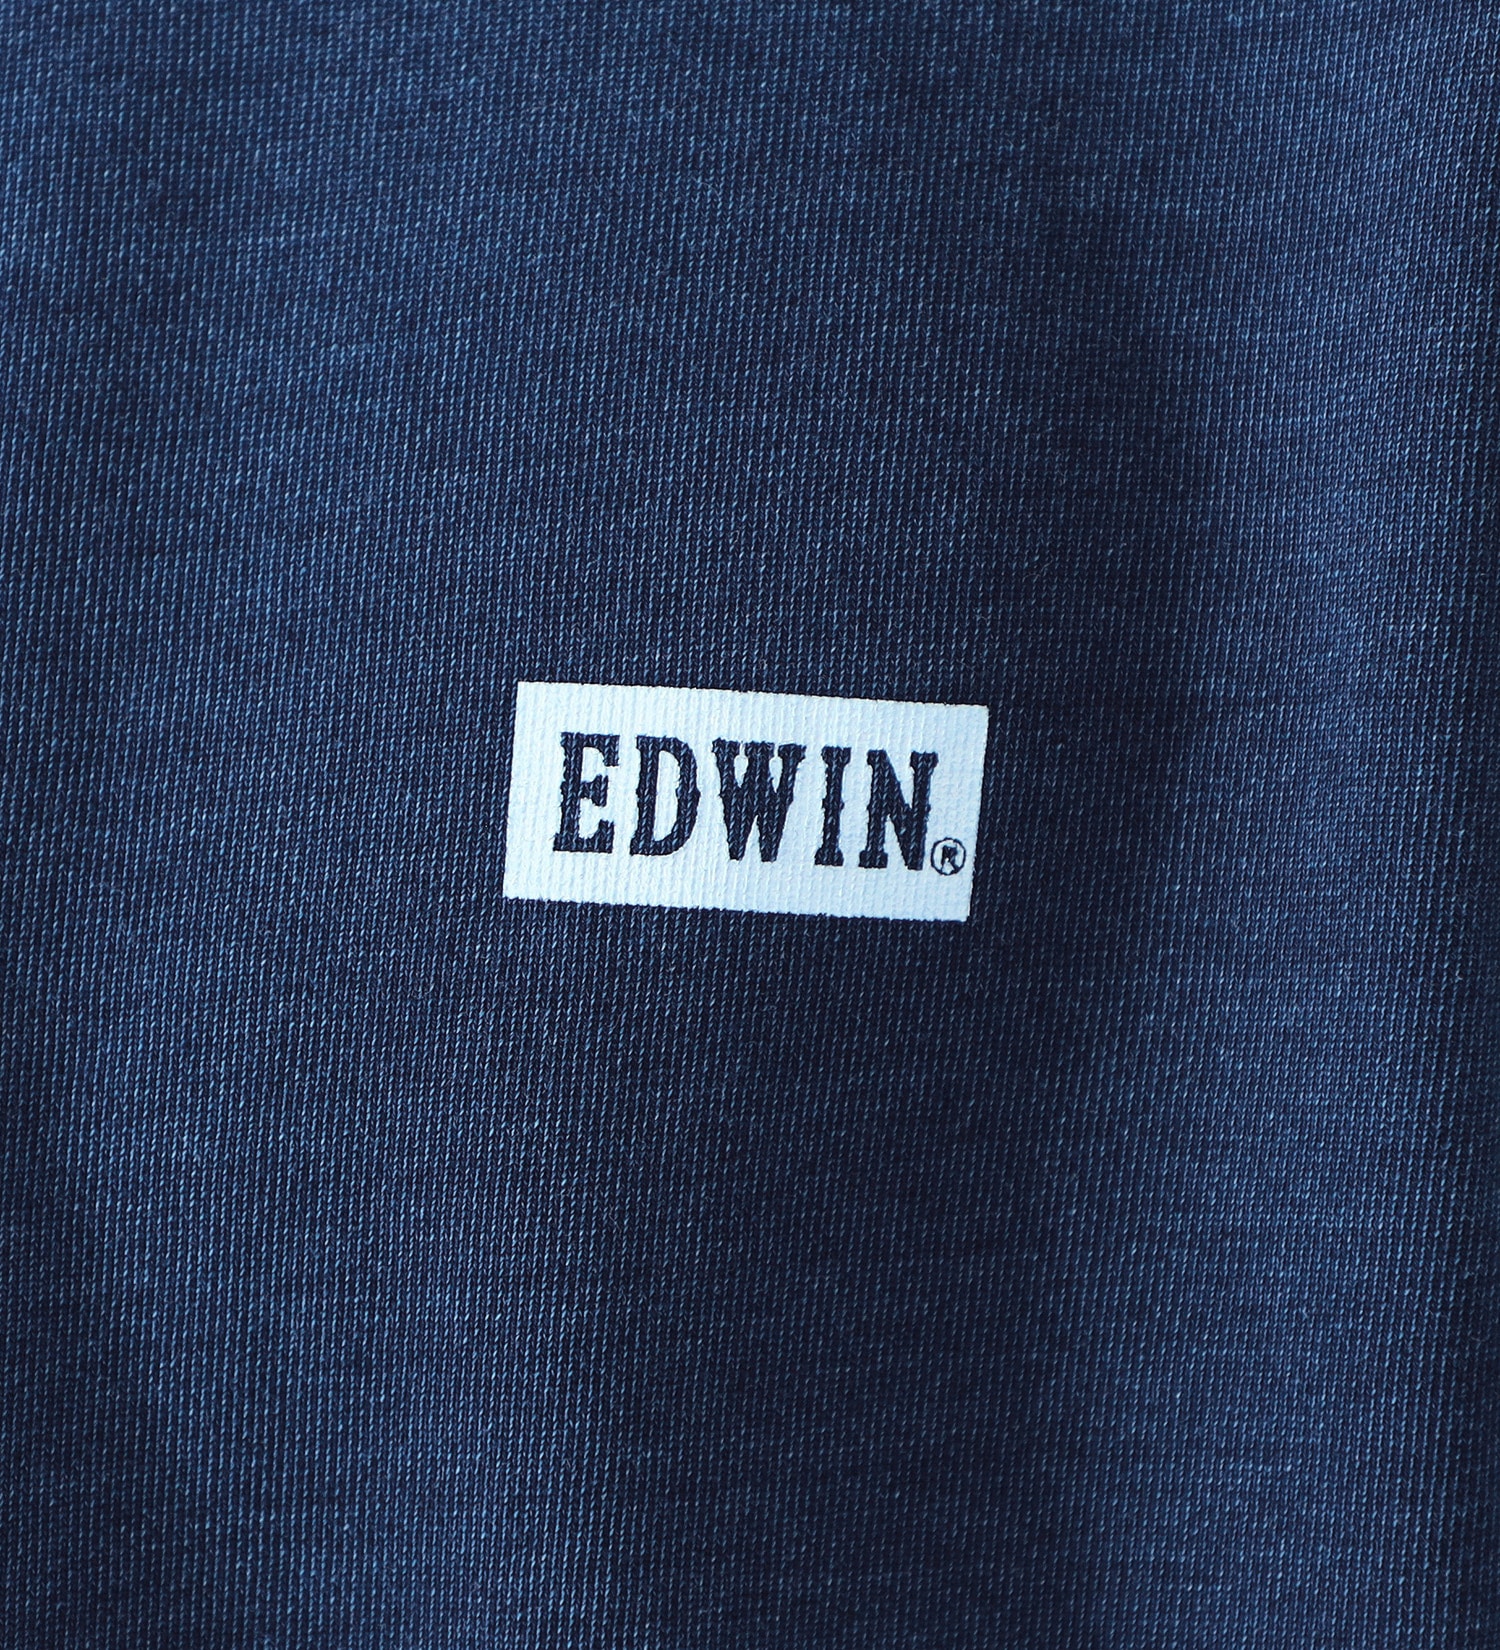 EDWIN(エドウイン)のクルーネックワンポイントロゴスウェット【アウトレット店舗・WEB限定】|トップス/スウェット/メンズ|ダークブルー